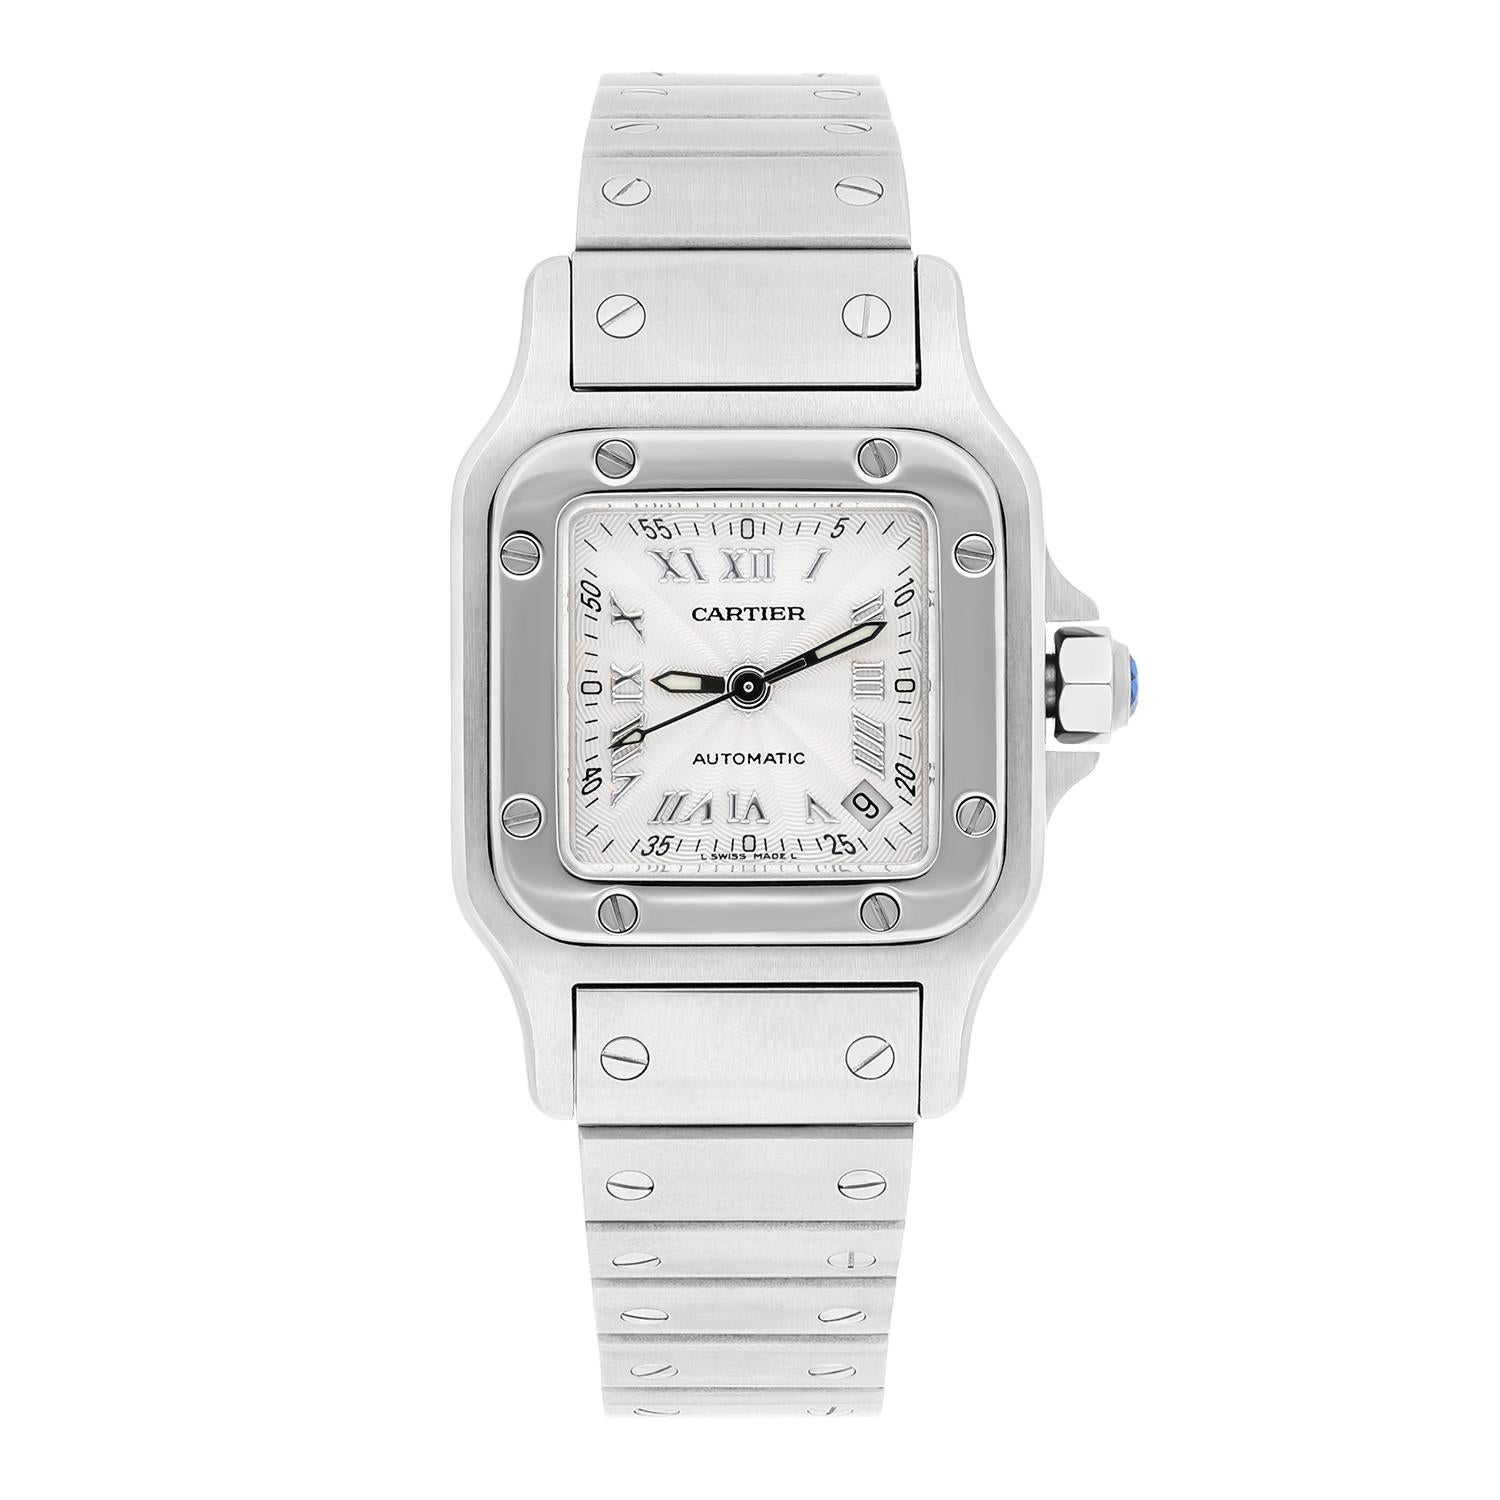 Cette montre-bracelet Cartier Santos Galbee est une pièce intemporelle qui allie luxe et polyvalence. La montre présente un boîtier en acier inoxydable avec une lunette fixe et un cadran argenté avec des chiffres romains. Le bracelet est également